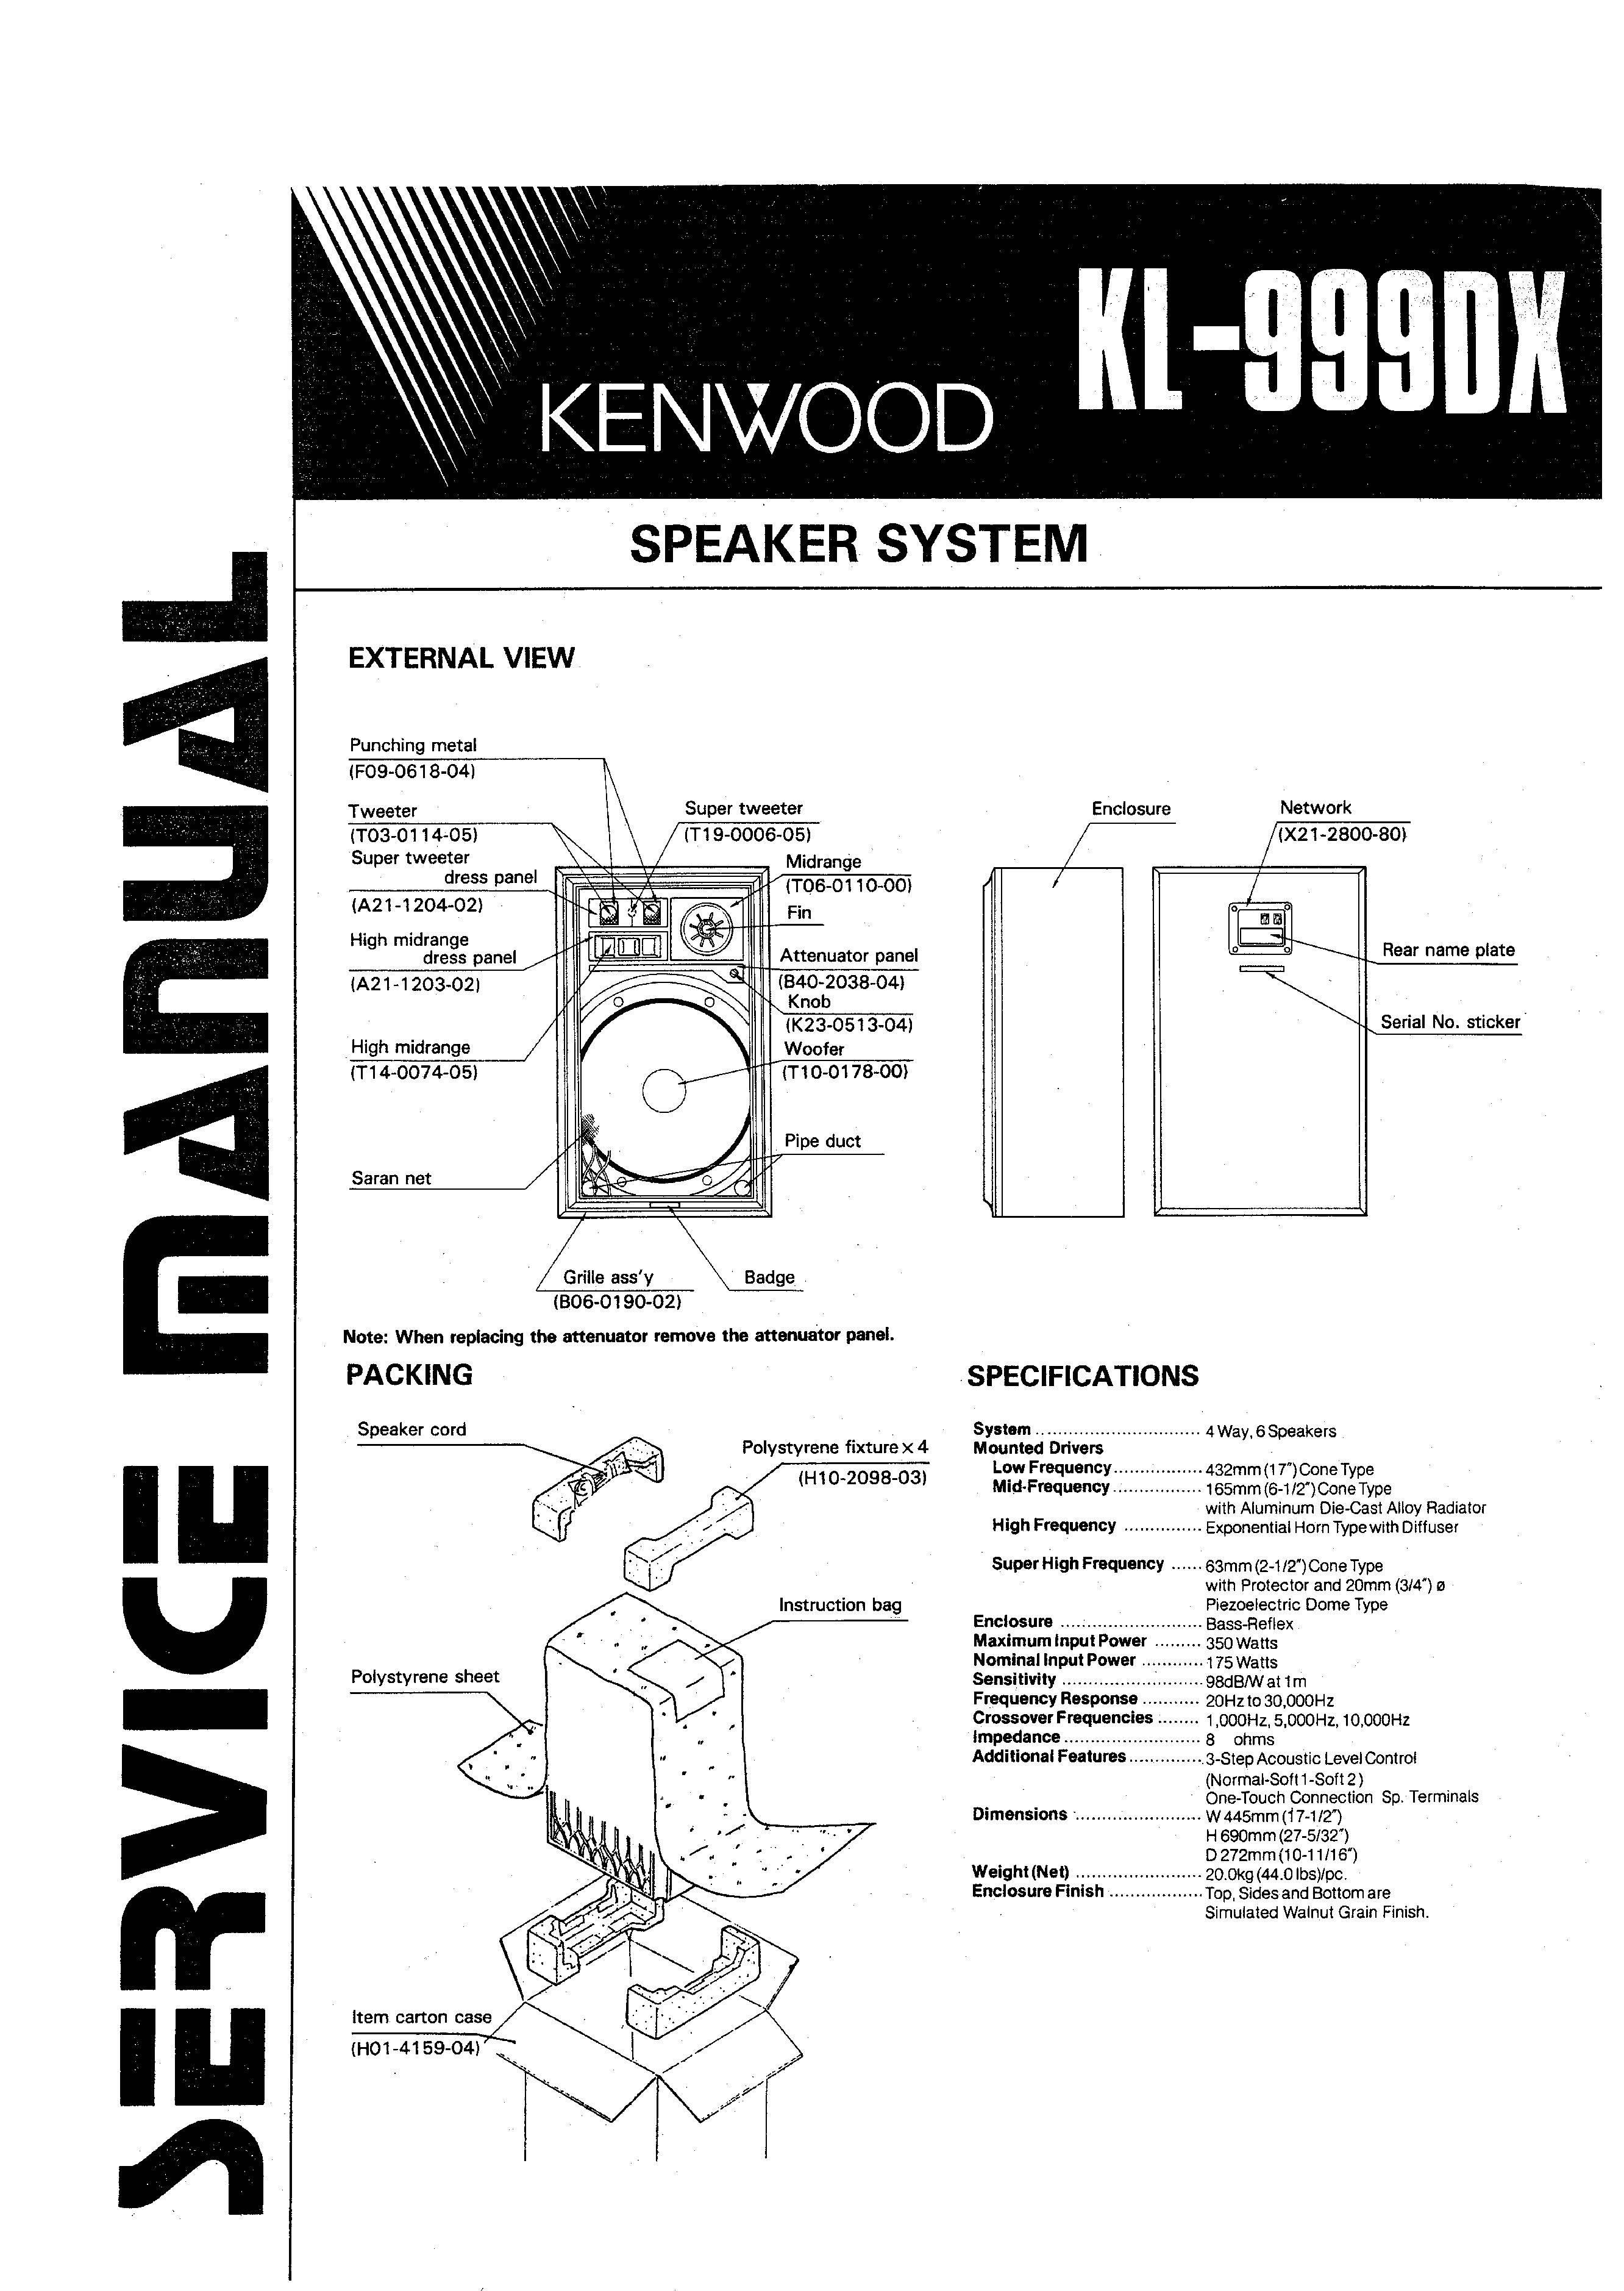 Kenwood KL-999DX